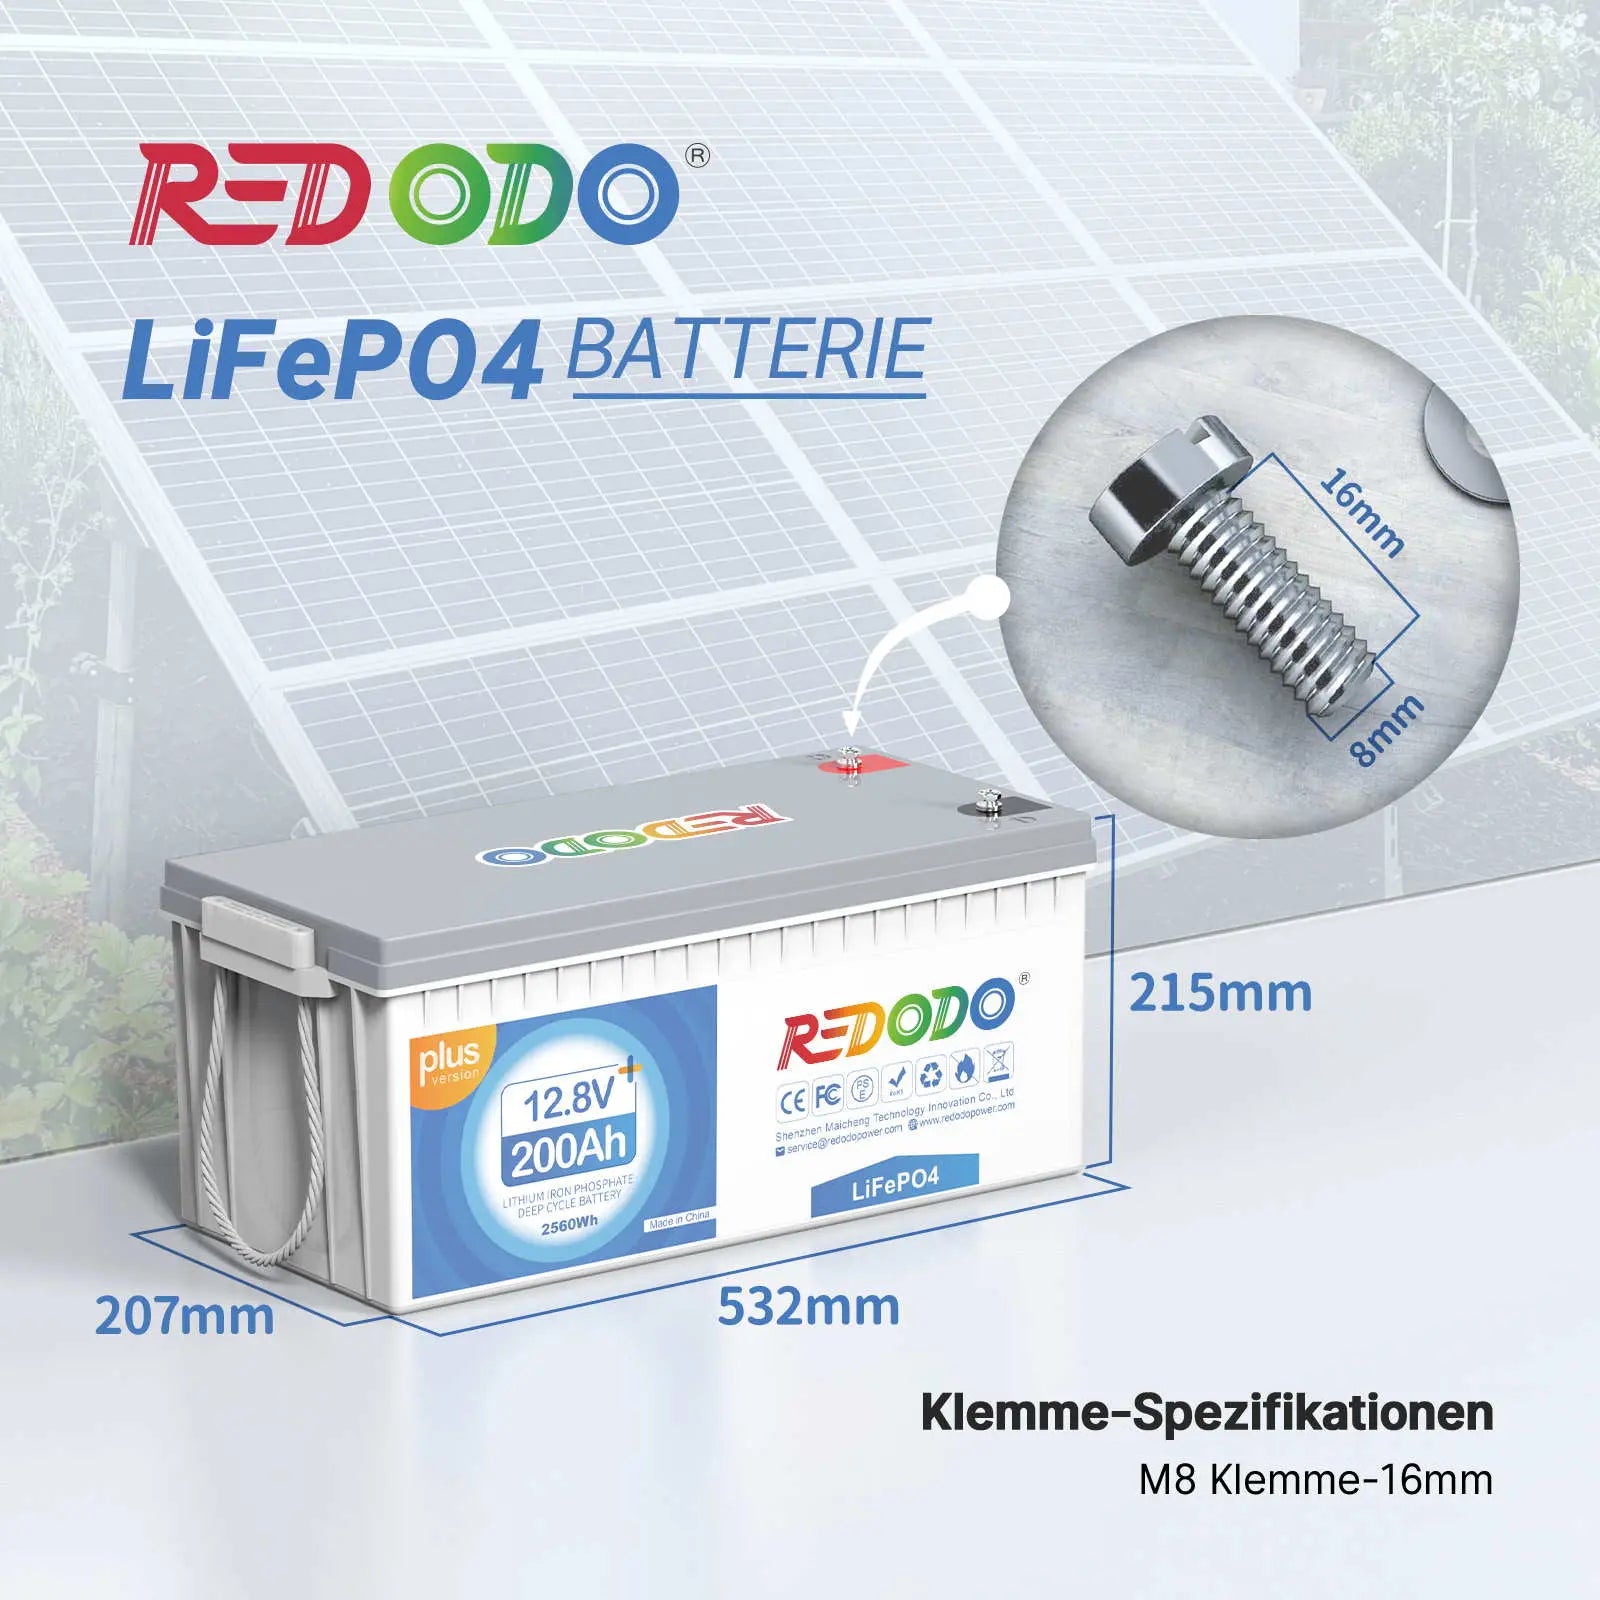 Redodo LiFePO4 200Ah Plus Battery 12V | 2.56kWh & 2.56kW